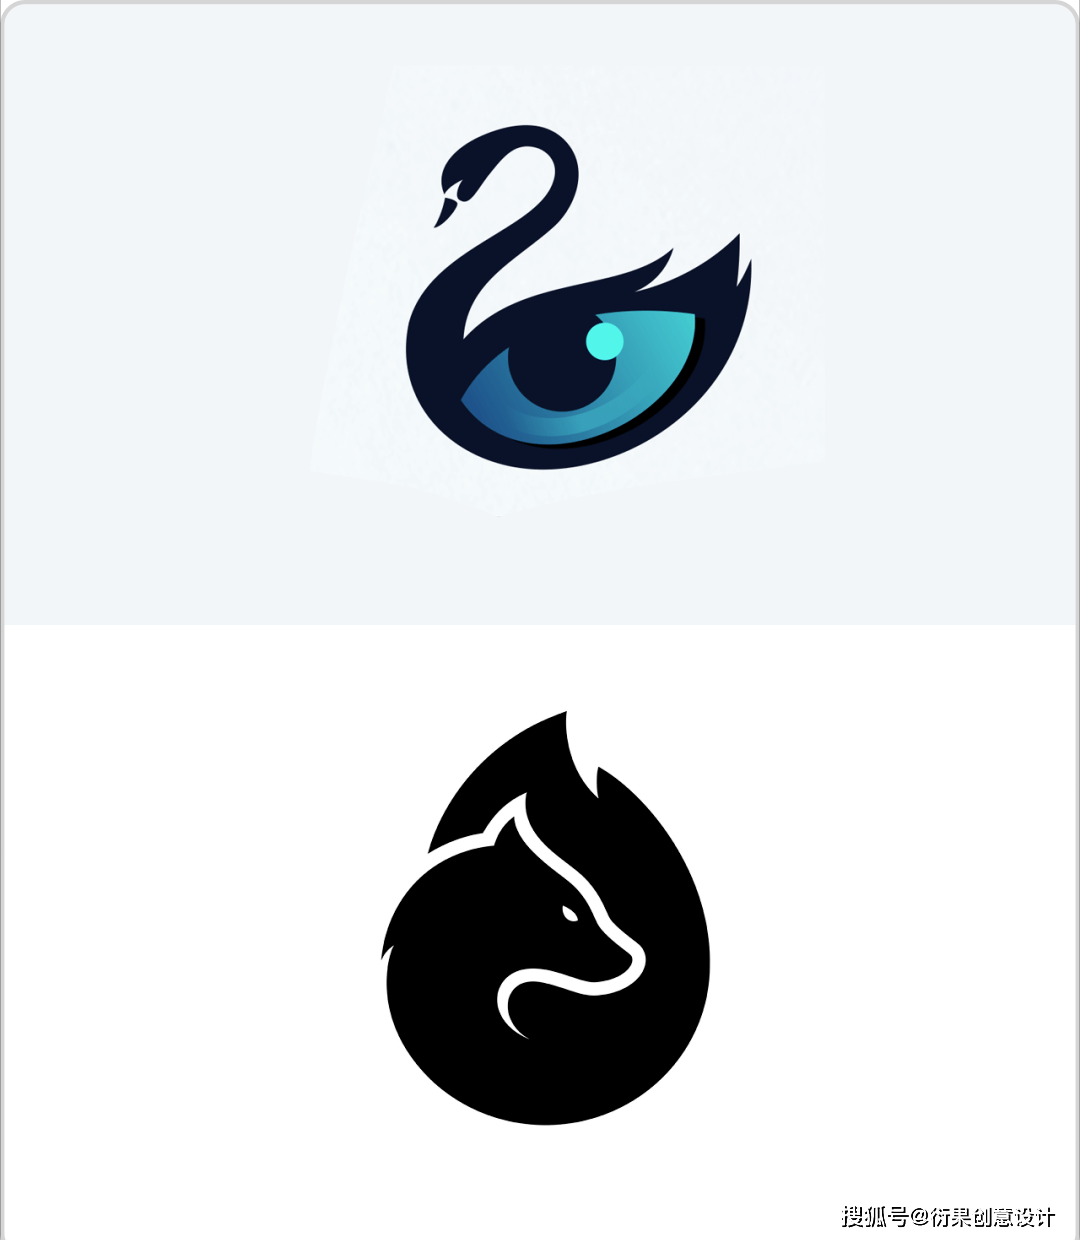 平面品牌logo设计的具体表现形式和手法